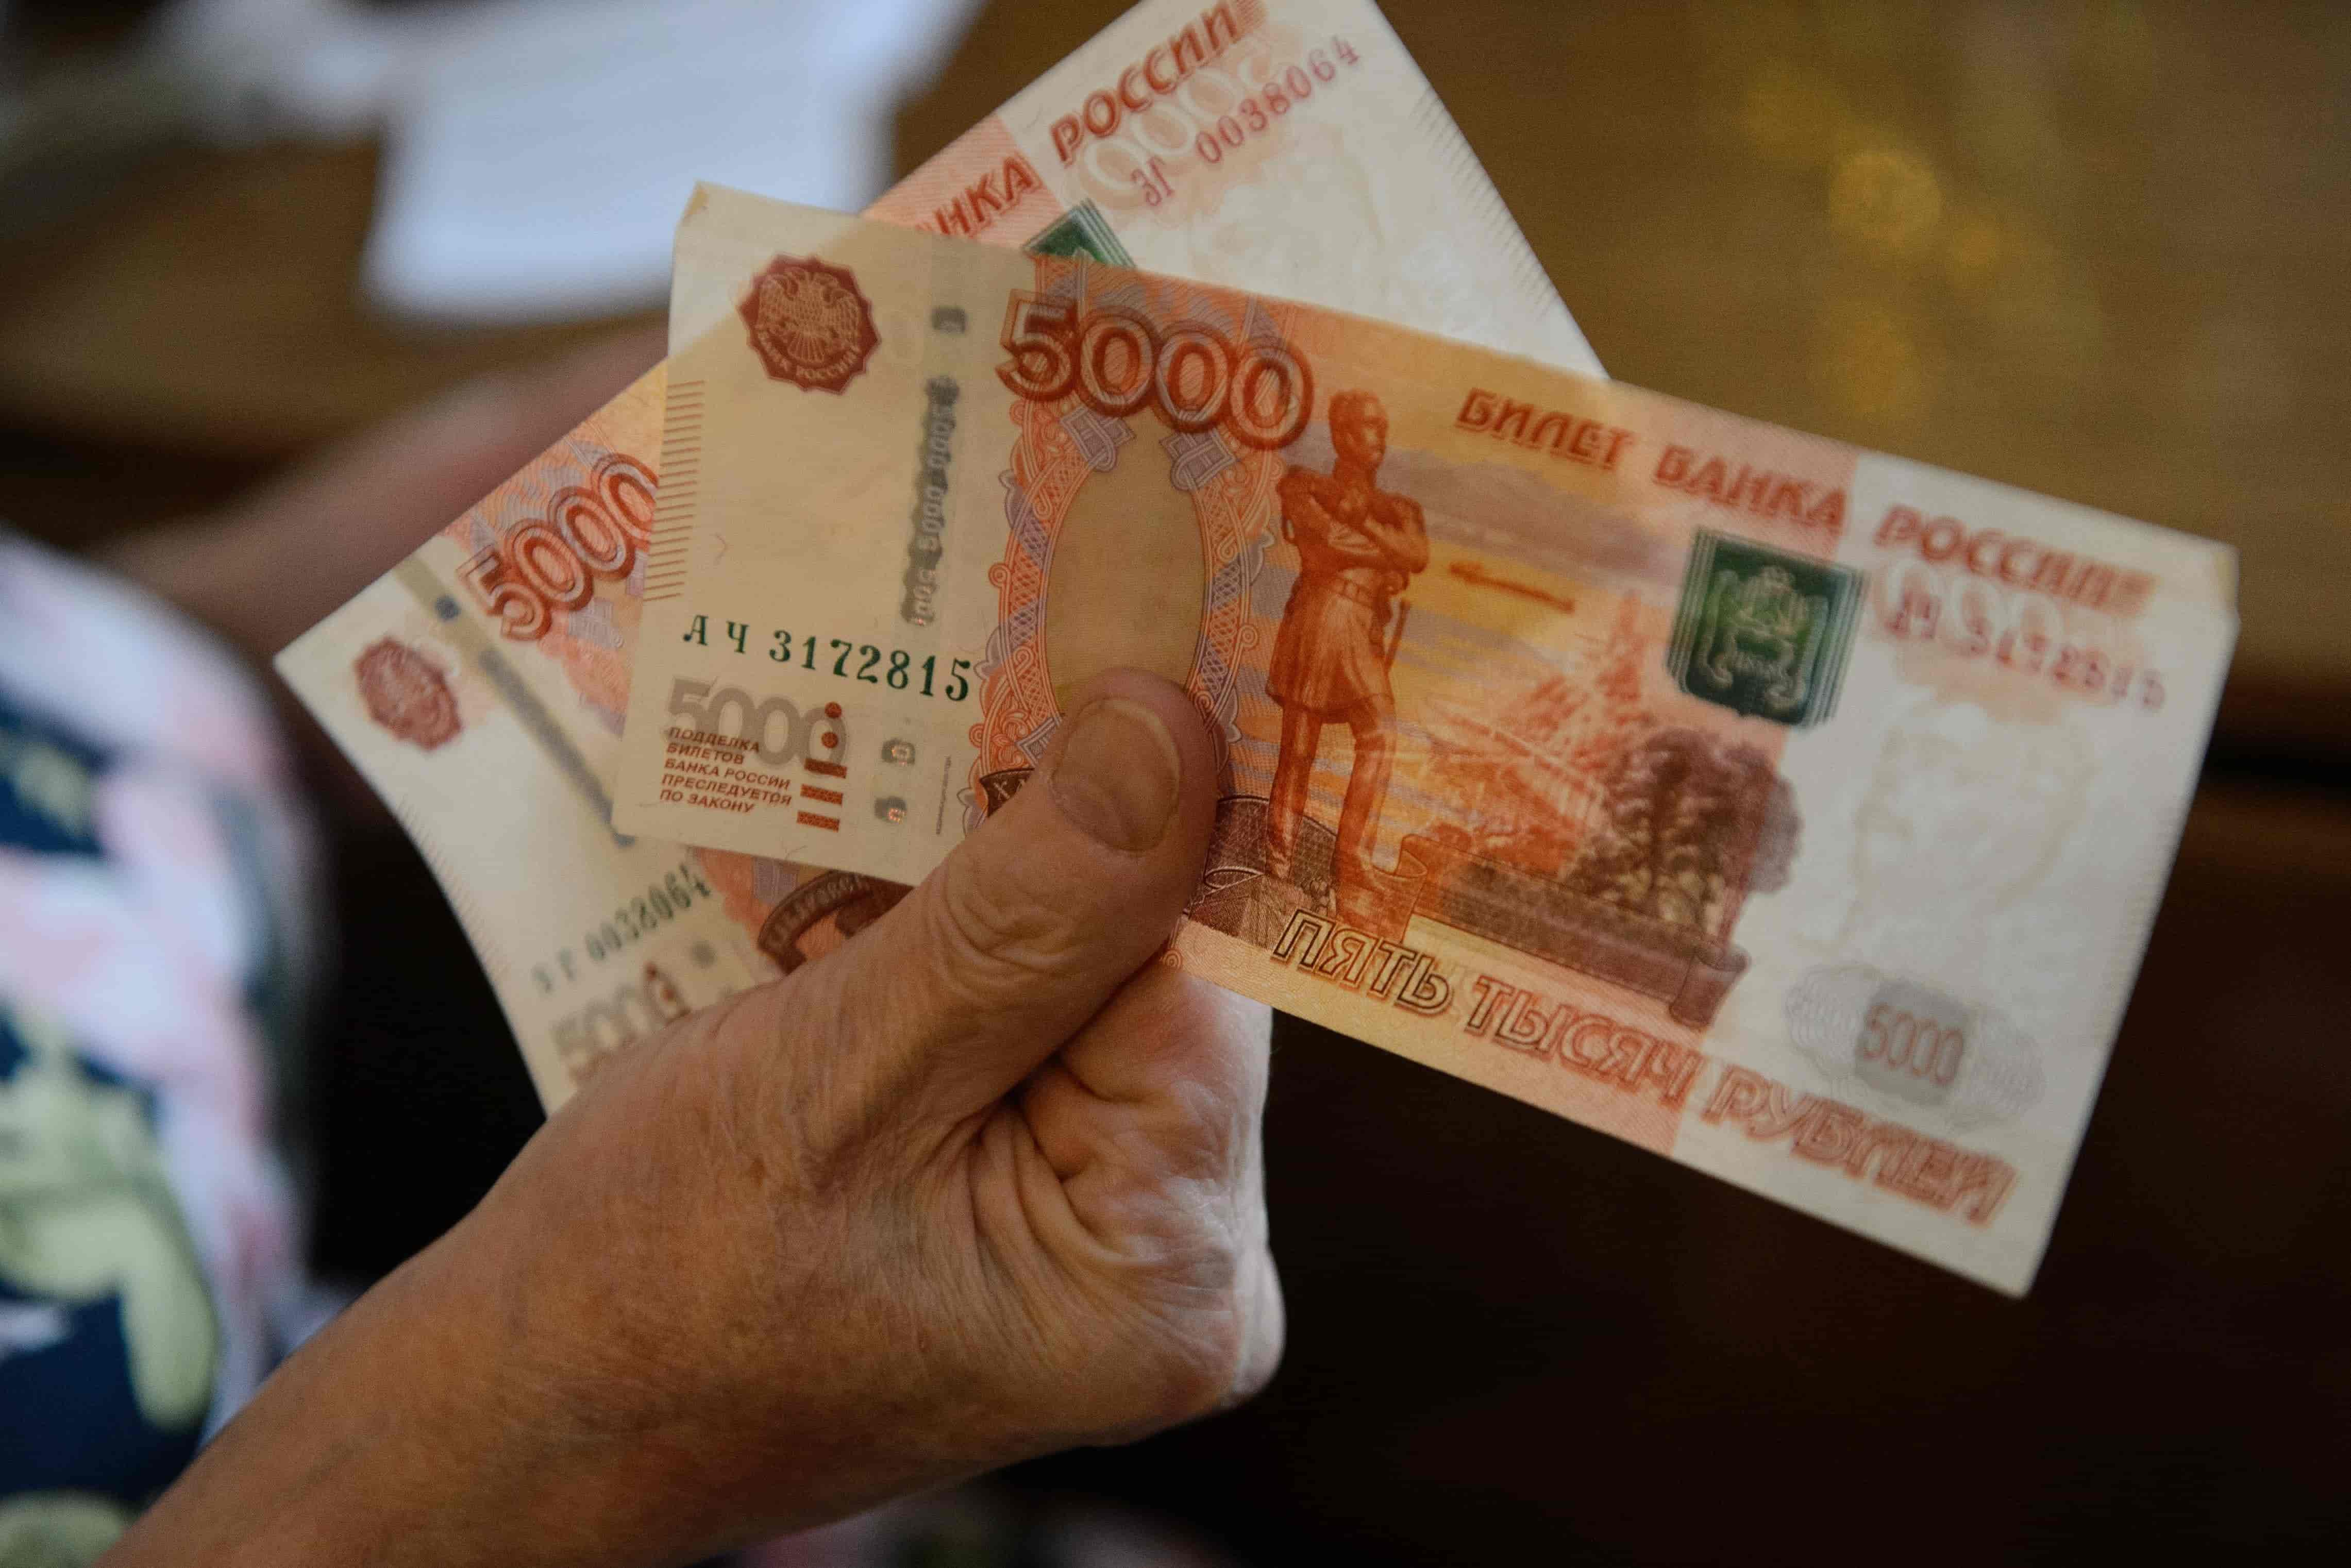  Указ подписан: пенсионерам начислят разовую выплату 10 000 рублей с 20 июня  